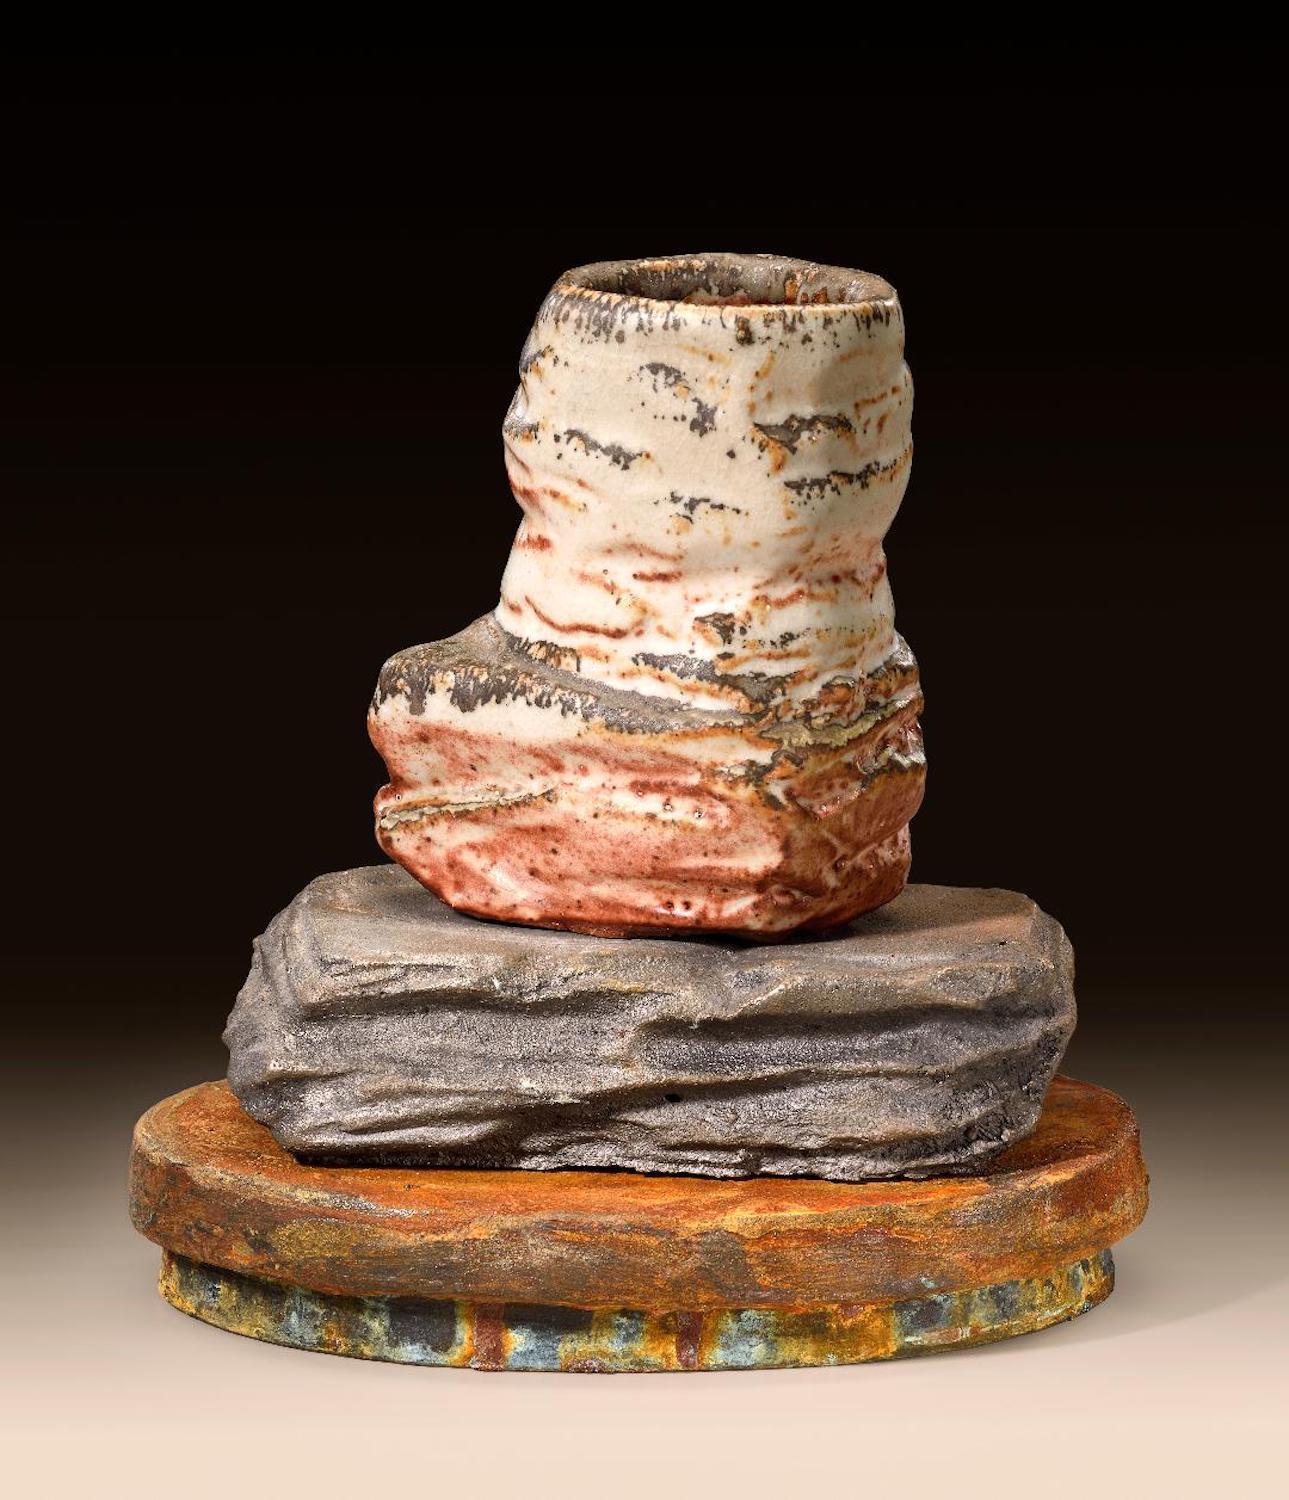 Modern Richard Hirsch Ceramic Scholar Rock Cup Sculpture #20, 2014 For Sale